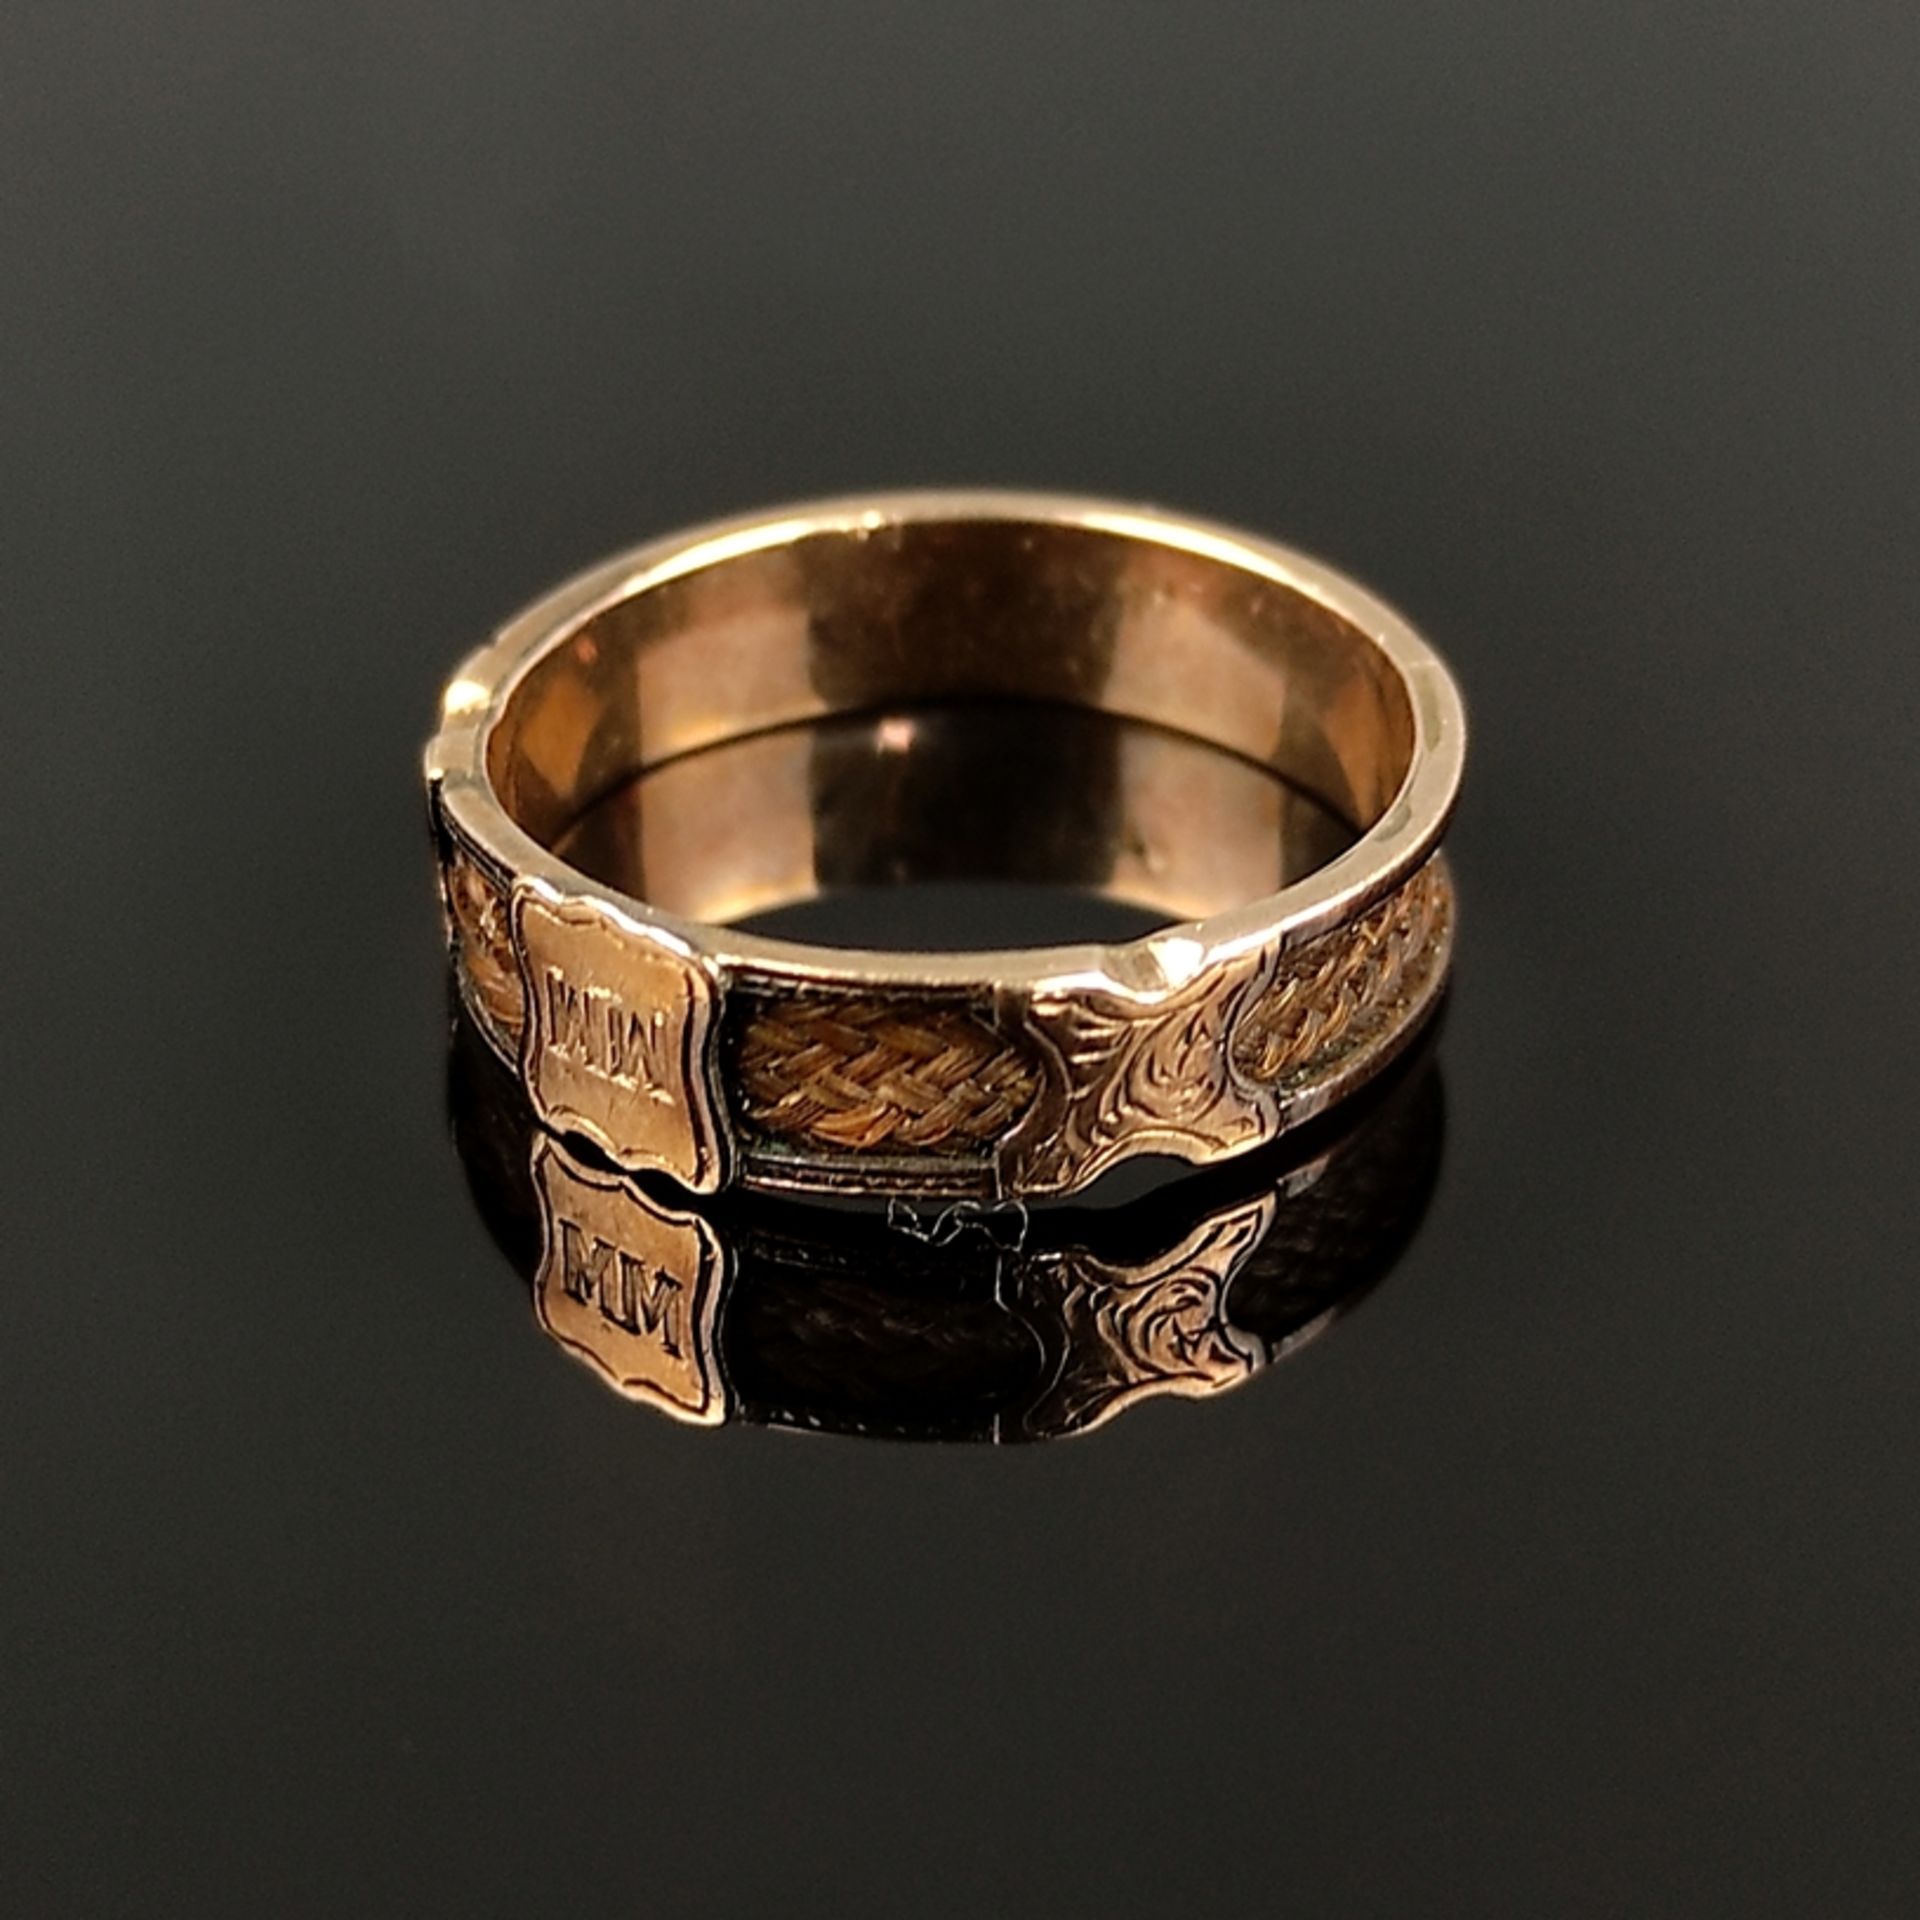 Antiker Ring mit Haareinlage, 19. Jahrhundert, 333/8K Rotgold (getestet), Gesamtgewicht 1,55g, Vord